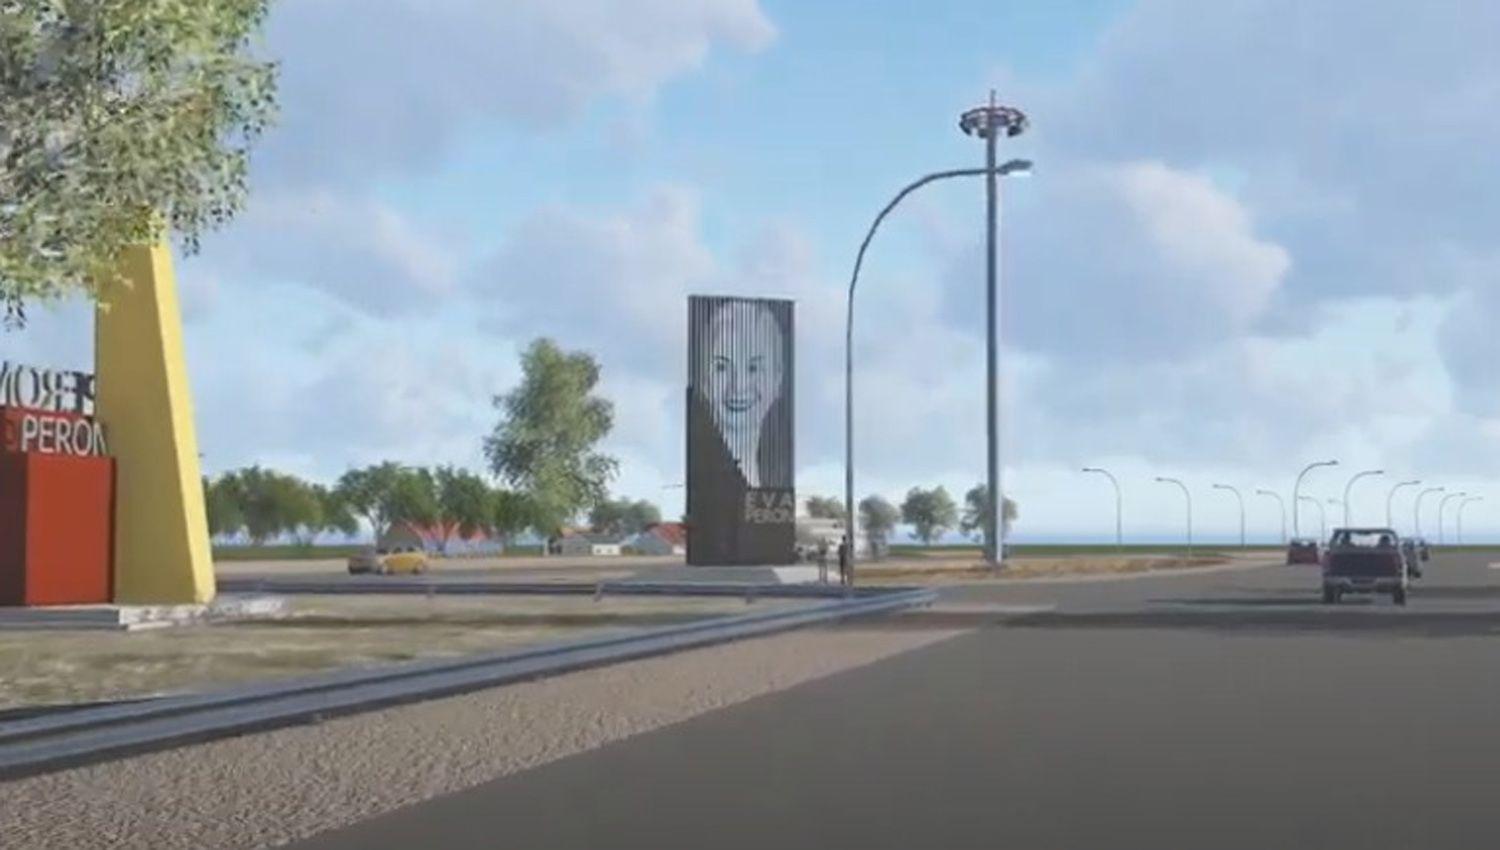 Planean construir un monumento a Eva Peroacuten en la autopista y asiacute es como se veriacutea